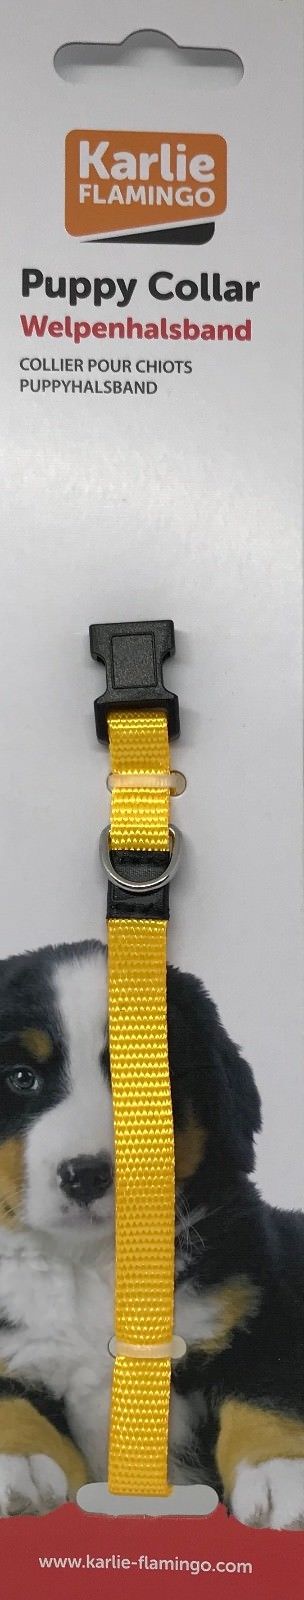 Karlie verstellbares Welpen Hunde Halsband Welpenhalsband 4 Farben 20 30 cm 10mm 253230056952 7